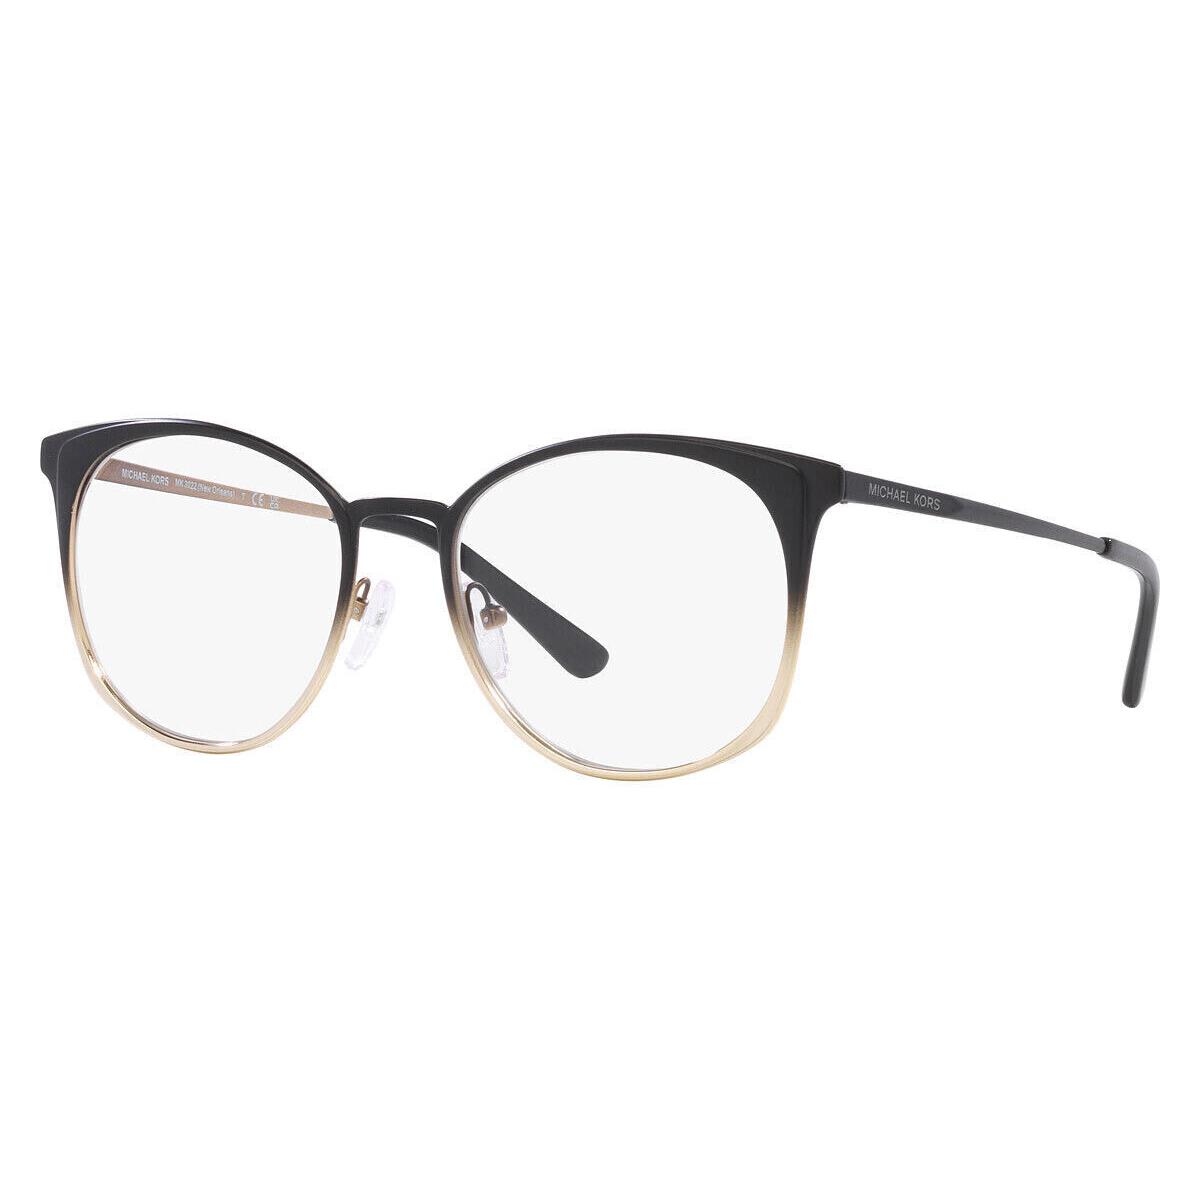 Michael New Orleans Kors Eyeglasses MK 3022 1014 Orleans Black Gold Frame 53-18-140